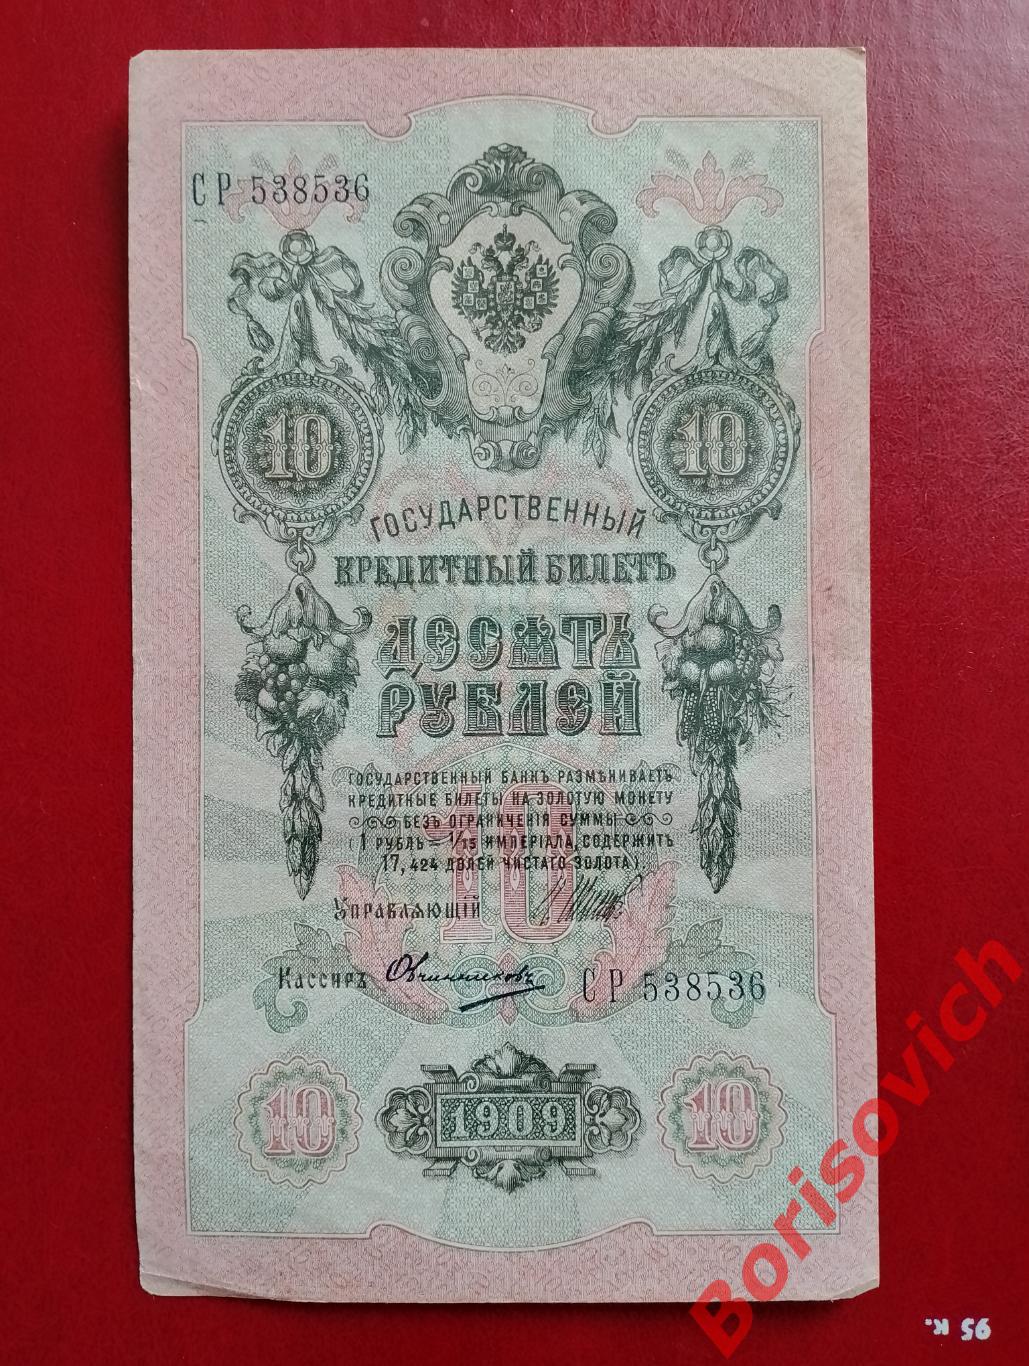 10 рублей 1909 г Управляющий ШИПОВ Кассир ОВЧИННИКОВ. СР 538536